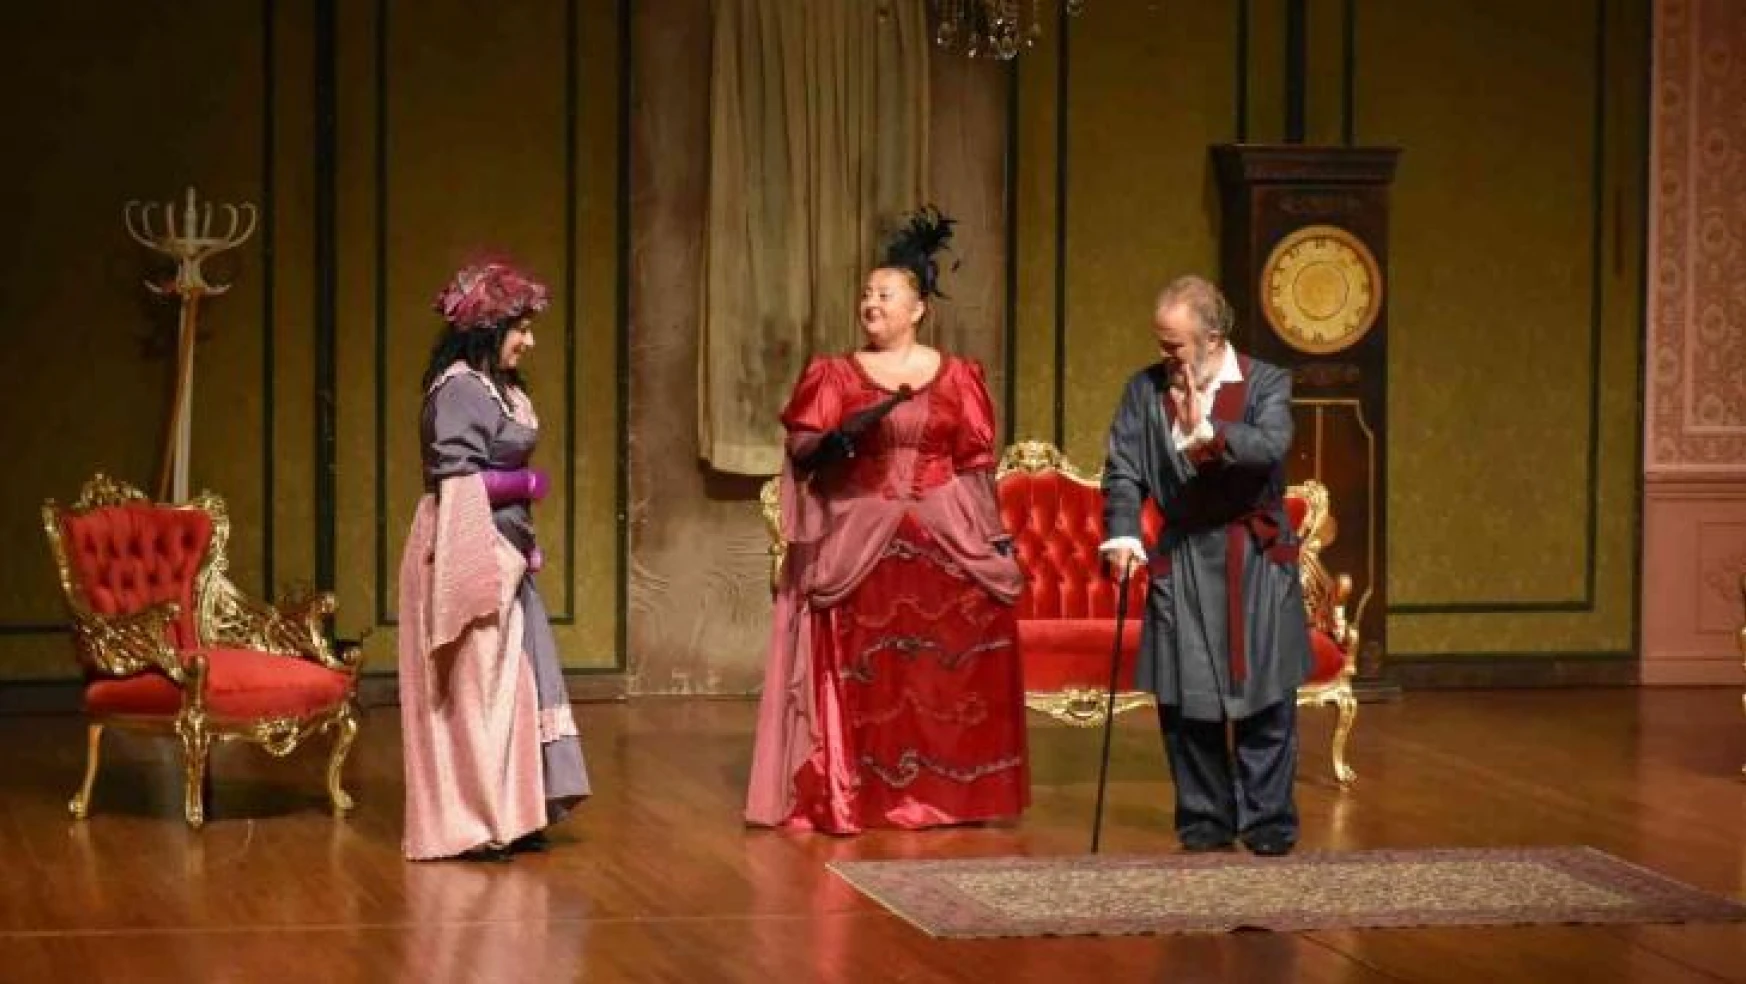 Anadolu Adliyesi personelinin 'Cimri' adlı tiyatro oyunu izleyiciyle buluştu